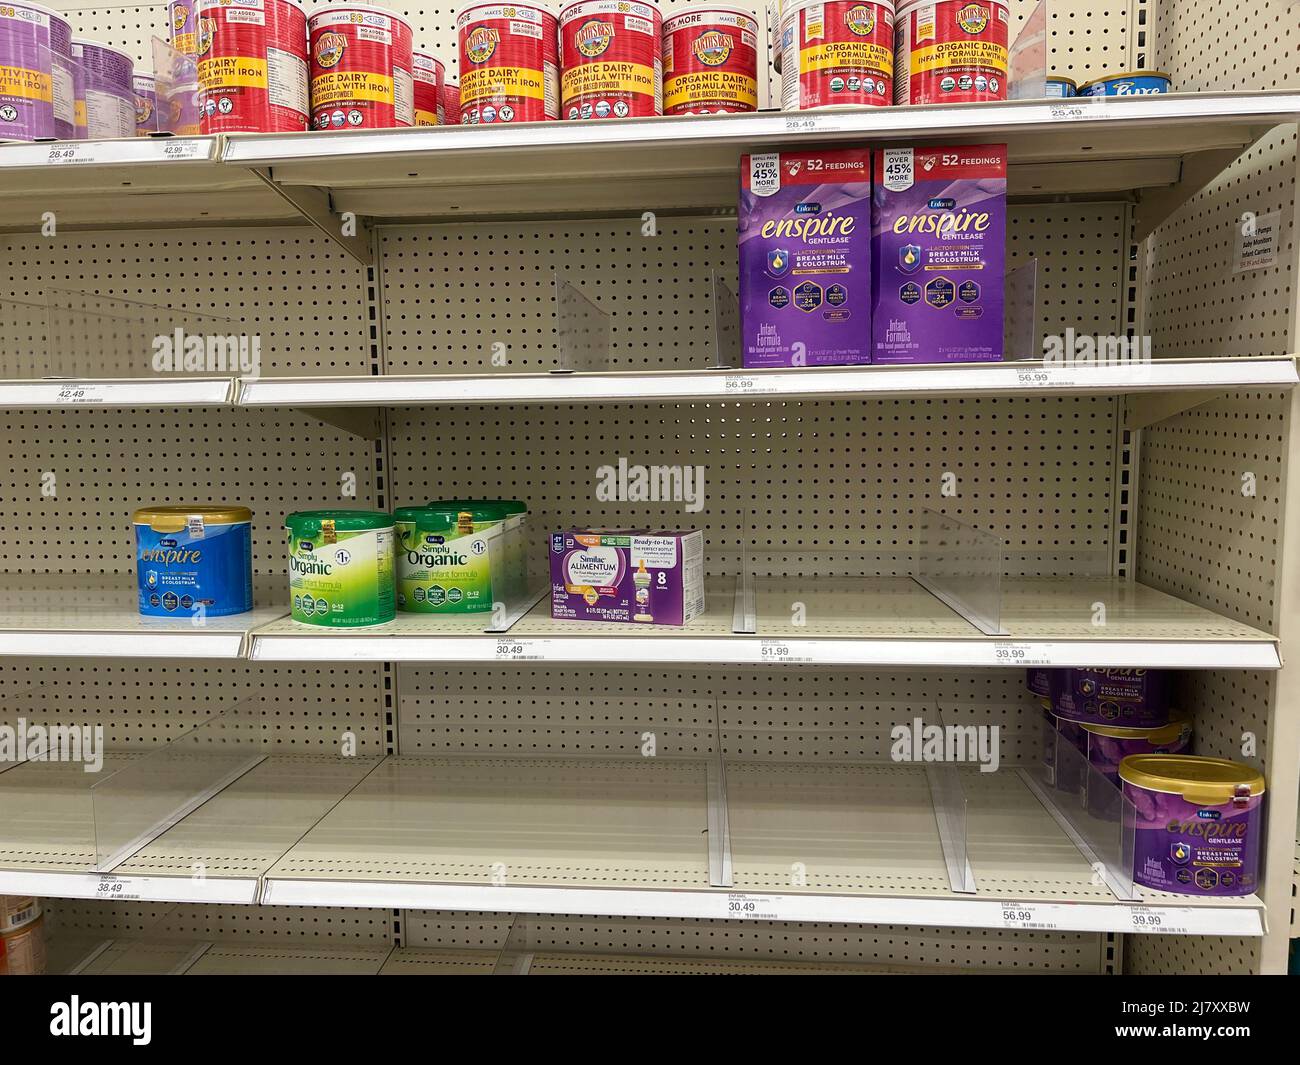 Les tablettes vides d'un magasin Target montrent à quel point la pénurie de lait maternisé est importante aux États-Unis Banque D'Images